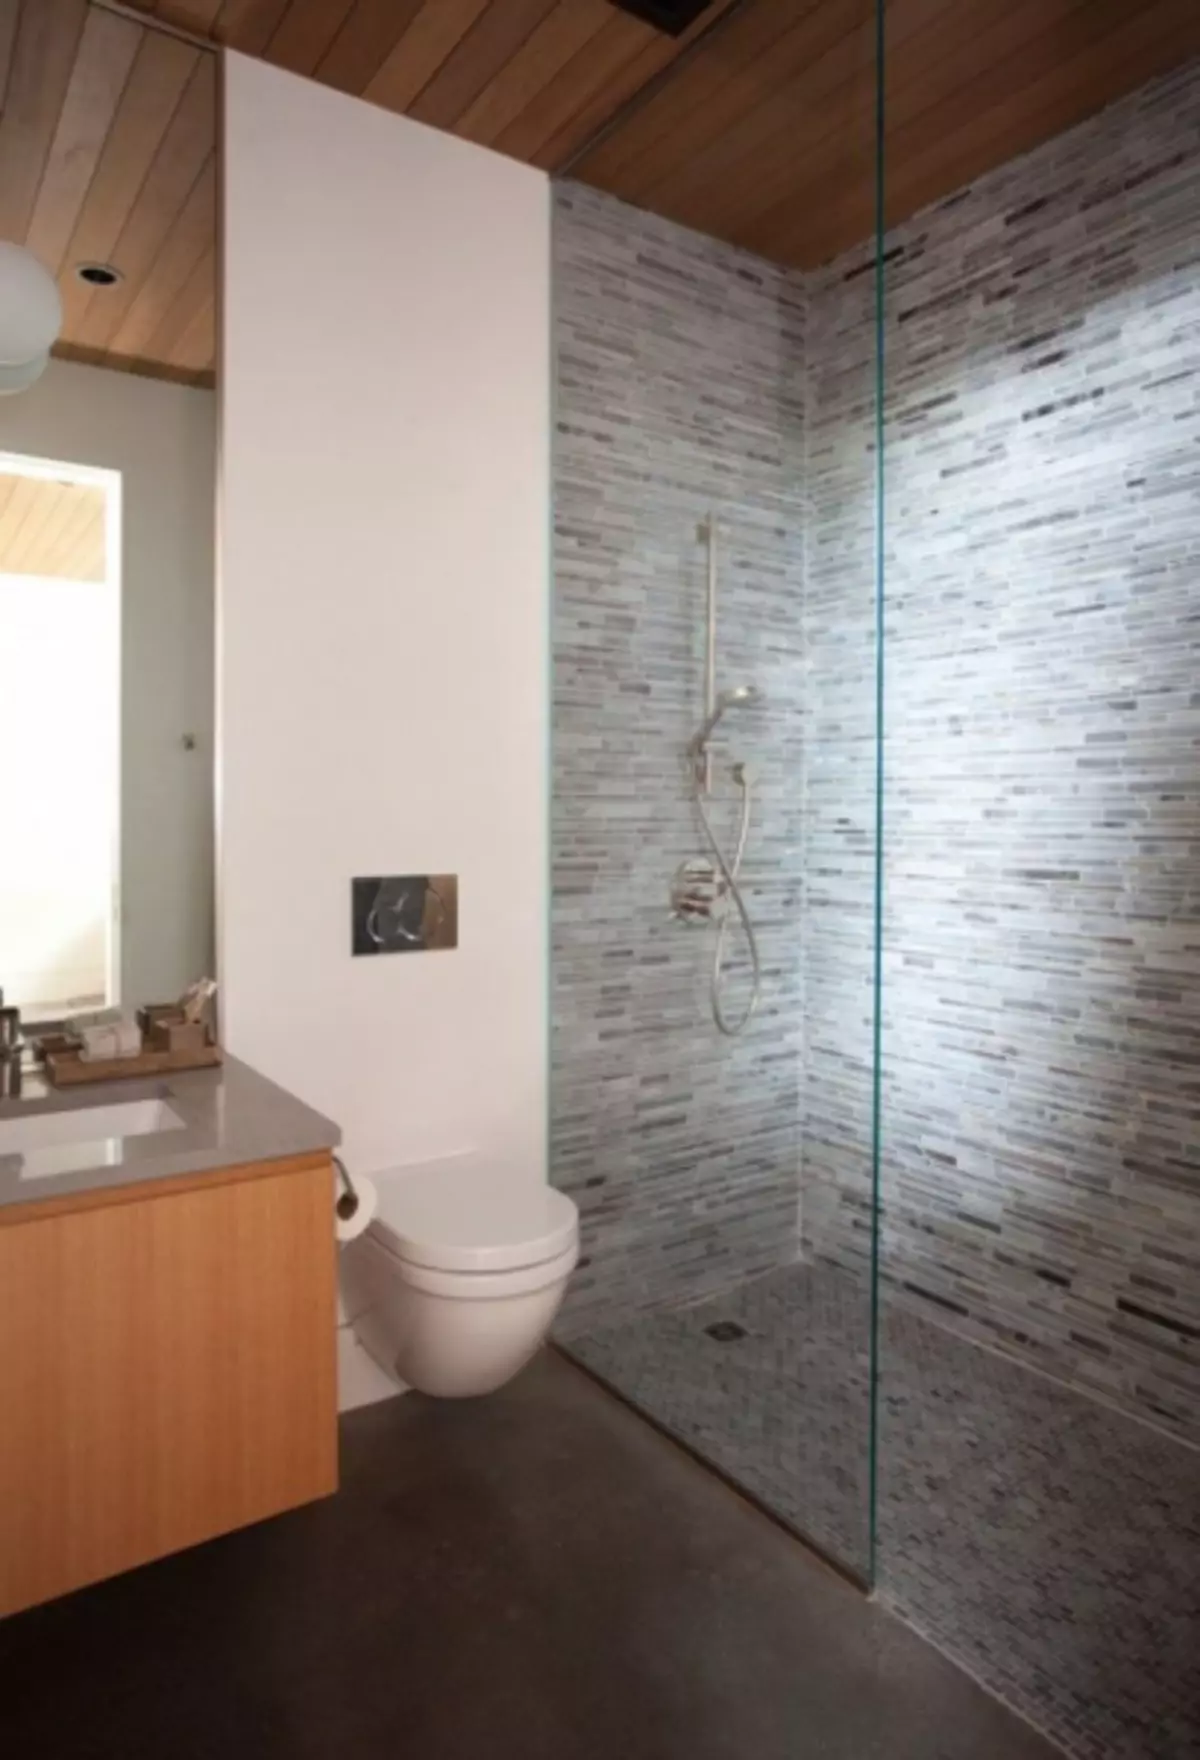 Interior Kamar Mandi Dikombinasikan Dengan Toilet: Cara Melakukan Indah Dan Praktis Pada Ruang Kecil (38 Foto)